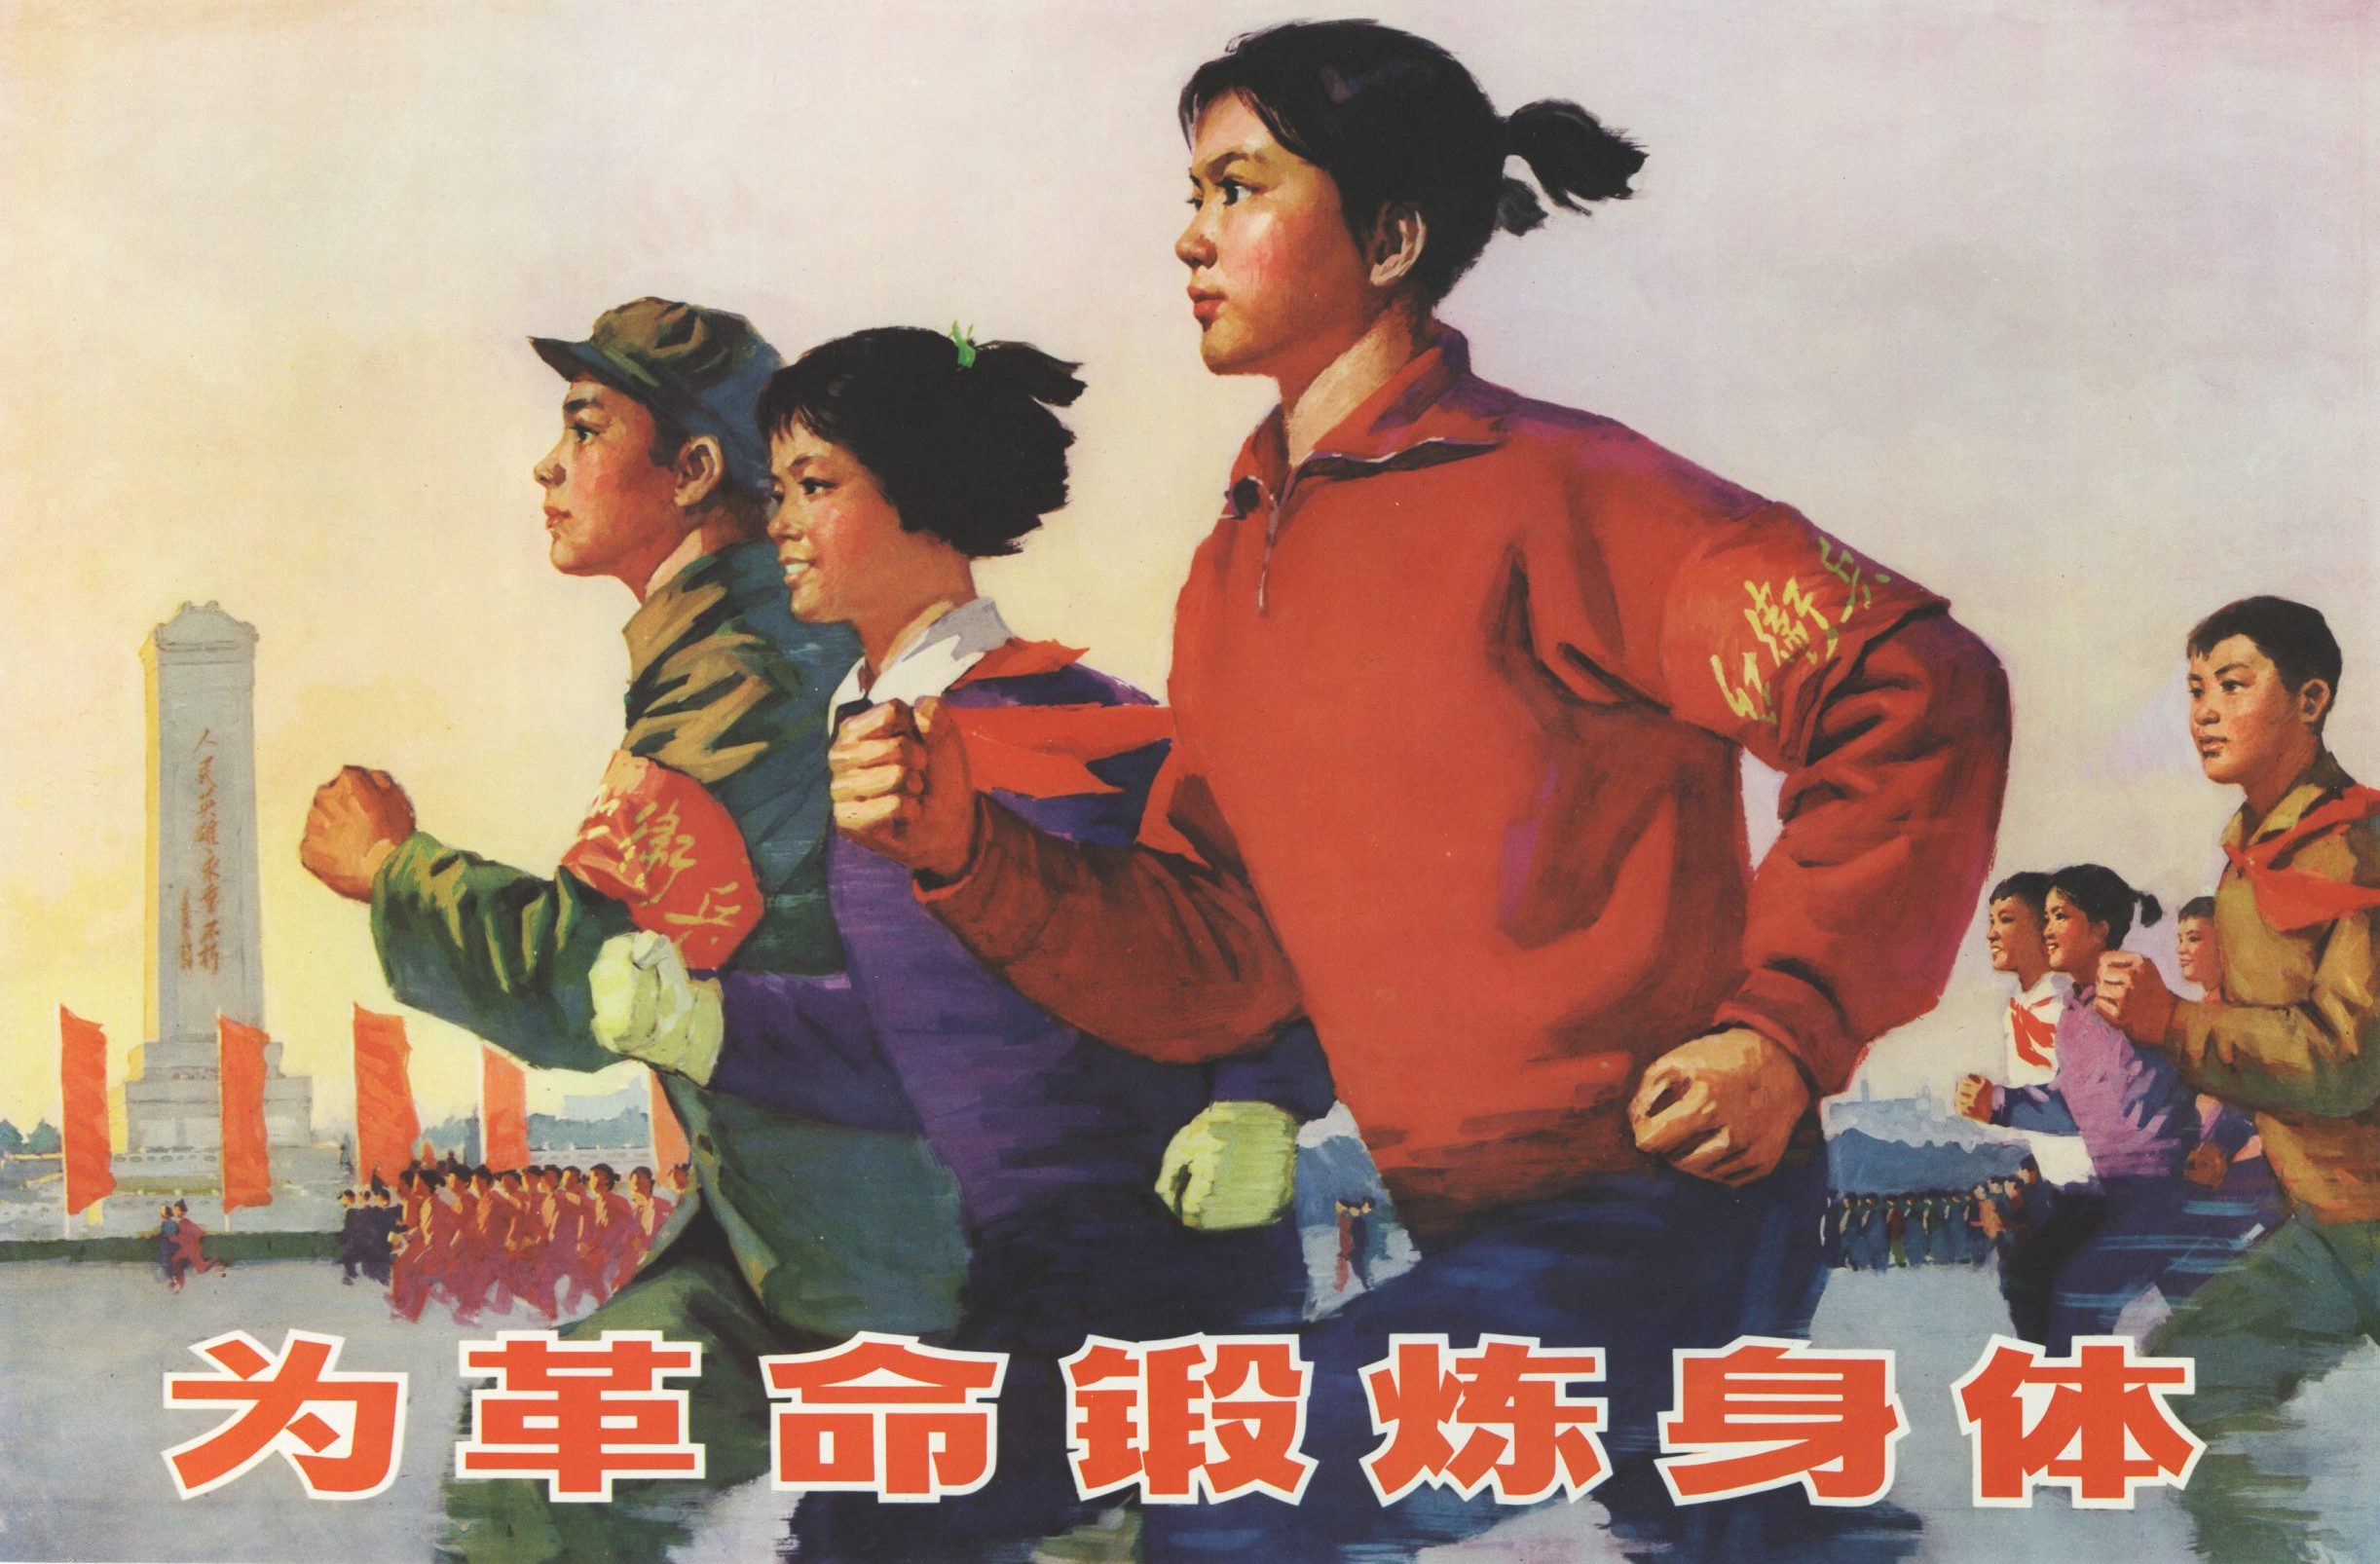 En målad kinesisk prograganda-affisch med springande ungdomar på.